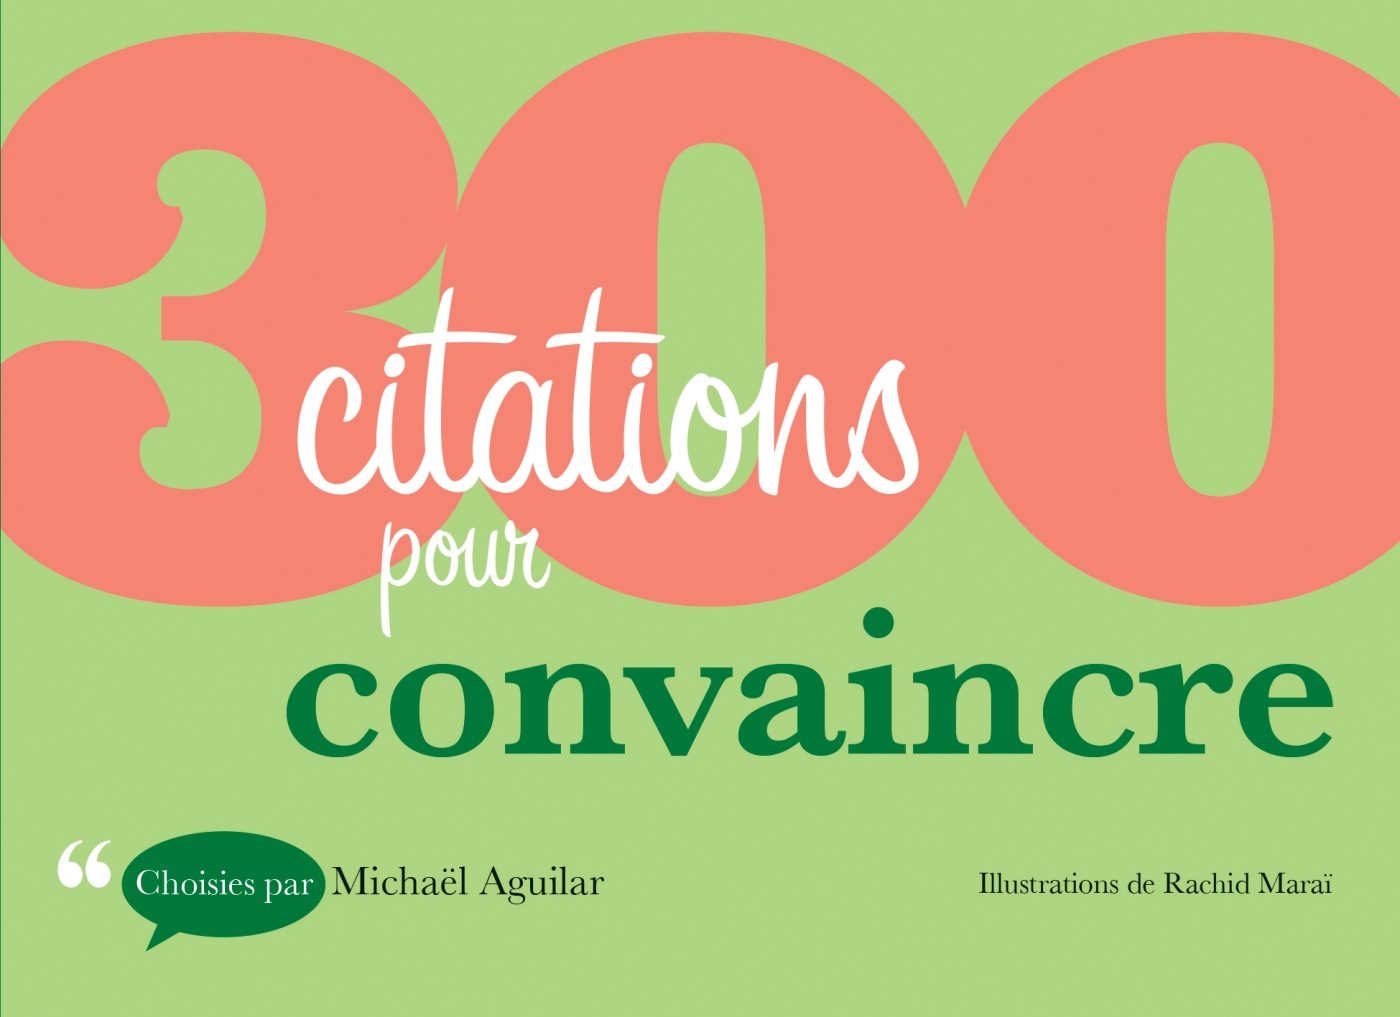 300 Citations Pour Convaincre Livre Et Ebook Start Up Entrepreneuriat Consulting De Michael Aguilar Dunod